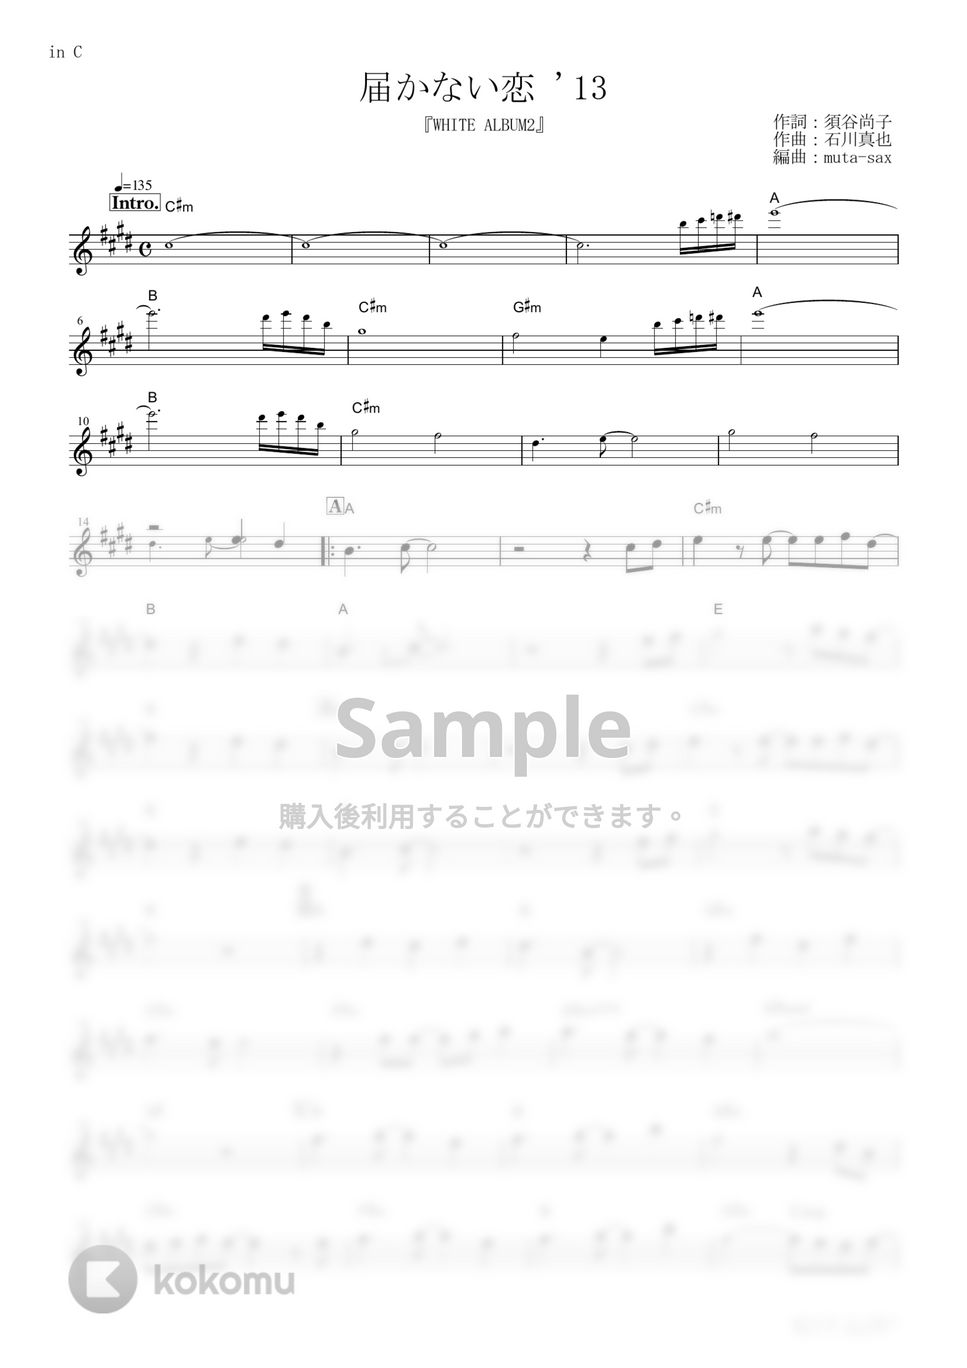 上原れな - 届かない恋 '13 (『WHITE ALBUM2』 / in C) by muta-sax